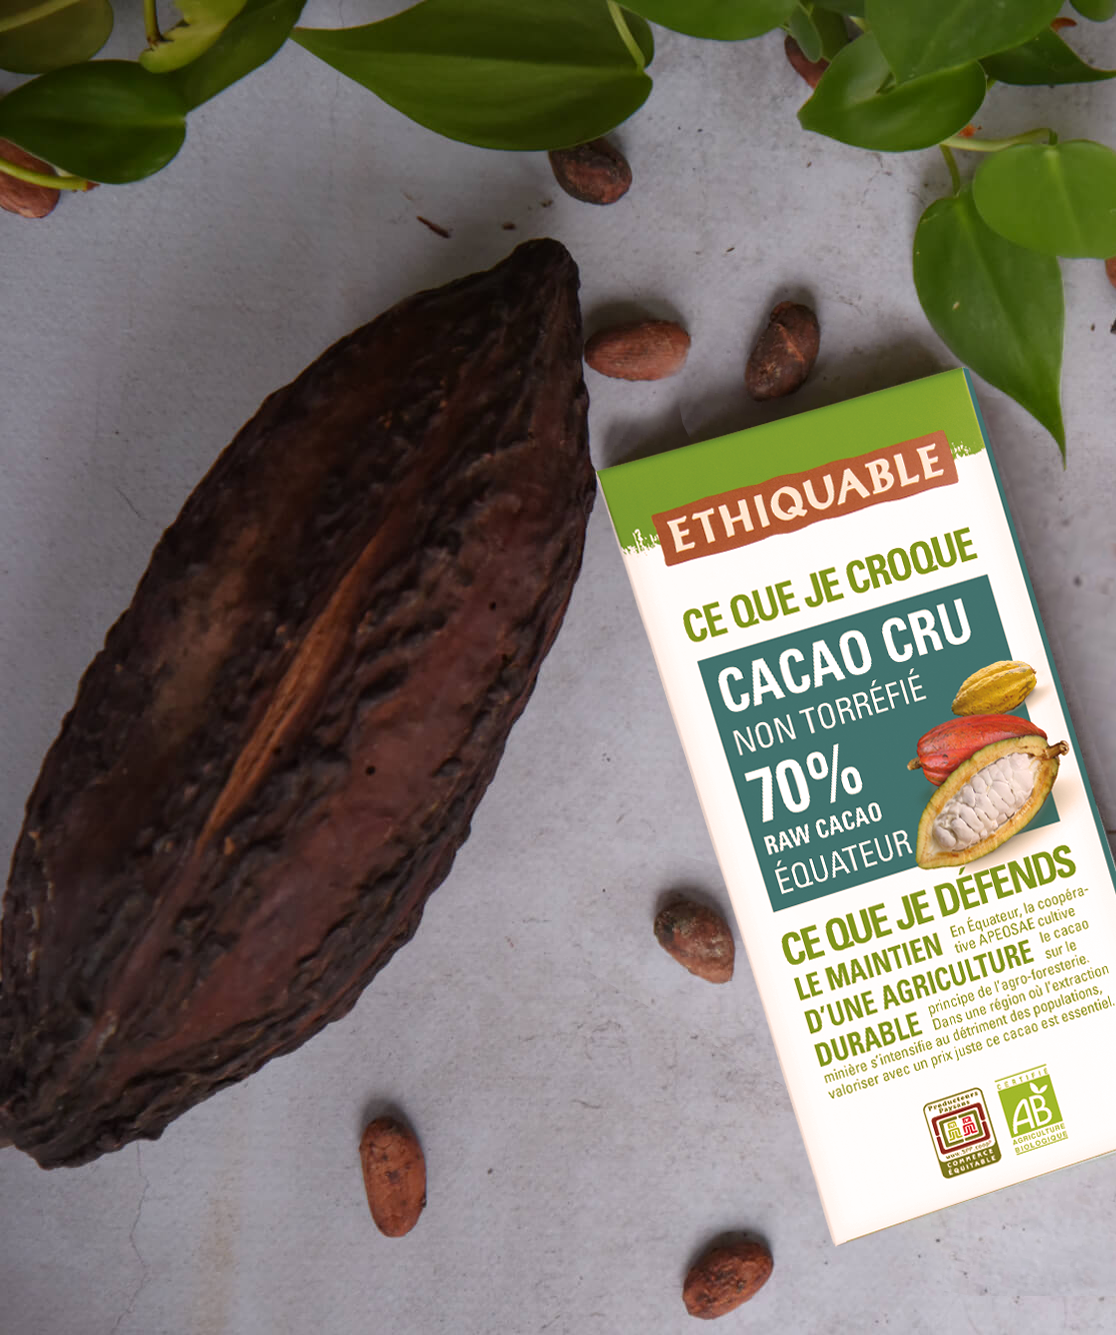 Ethiquable - Cacao cru bio non torréfié 70% de cacao d'Equateur issu du Commerce équitable